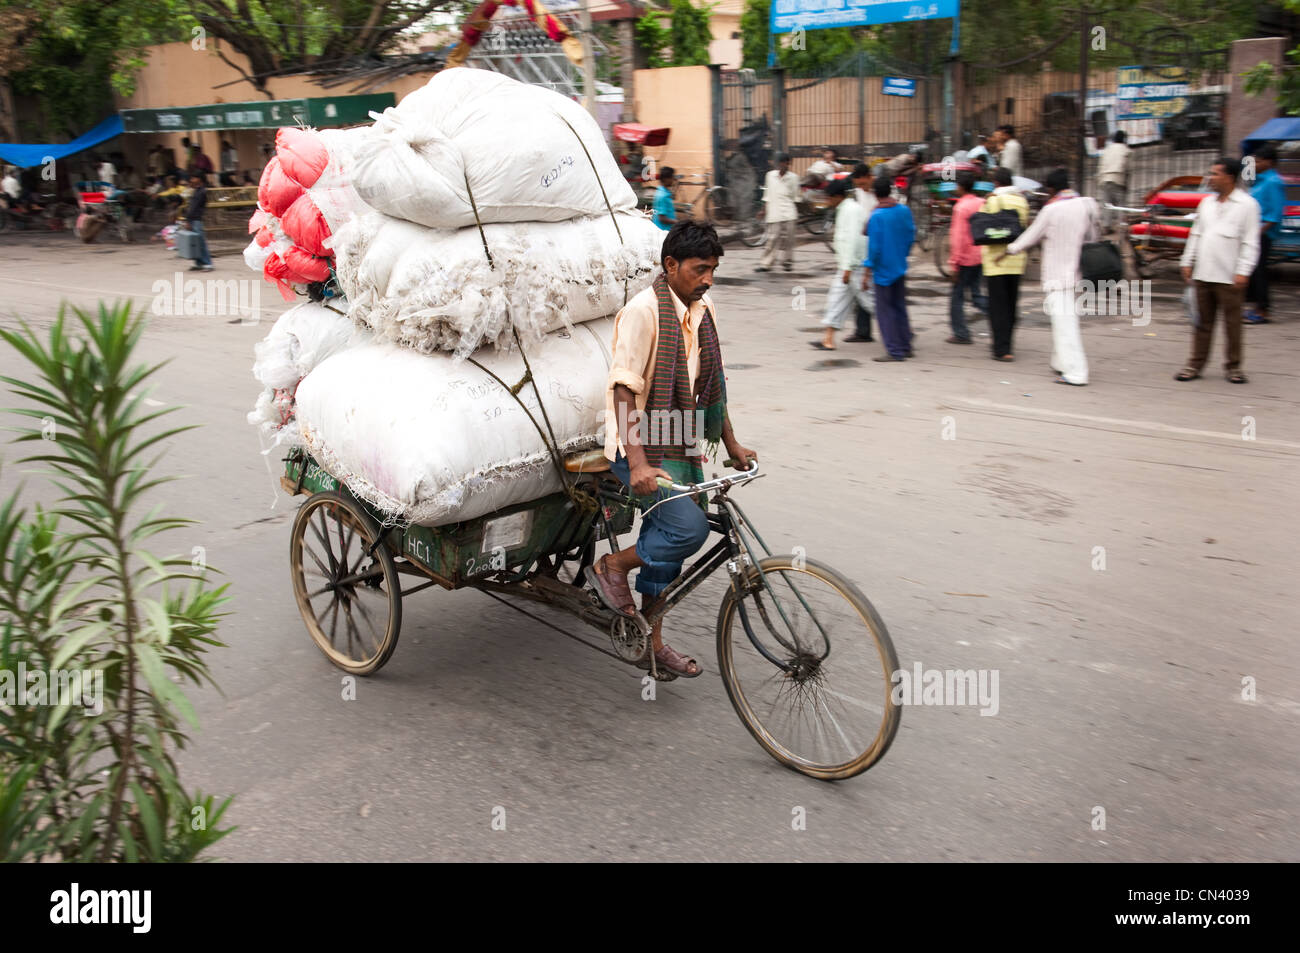 Eine geschäftige Straßenszene in Indien Stockfoto